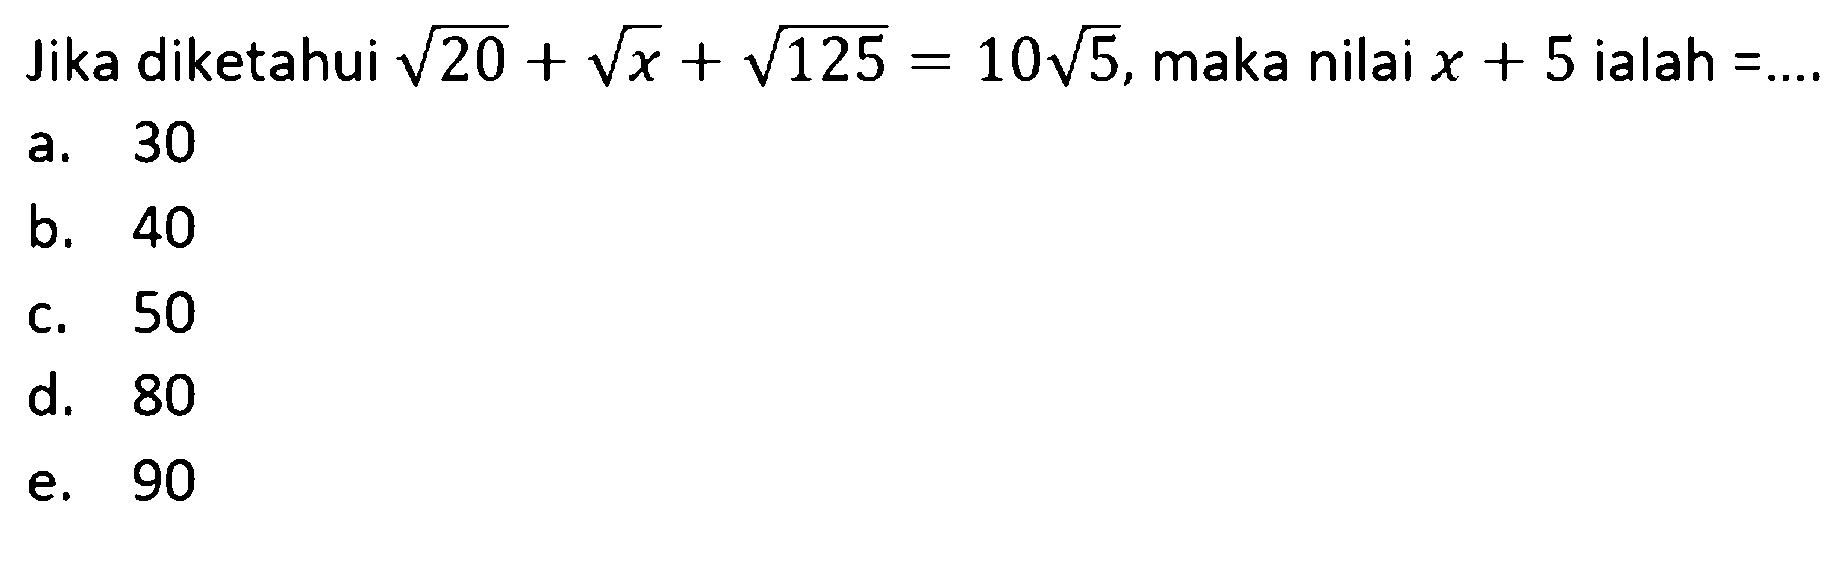 Jika diketahui akar (20) + akar (x) + akar (125) = 10 akar (5),maka nilai x + 5 ialah ... a. 30 b. 40 c. 50 d. 80 e. 90